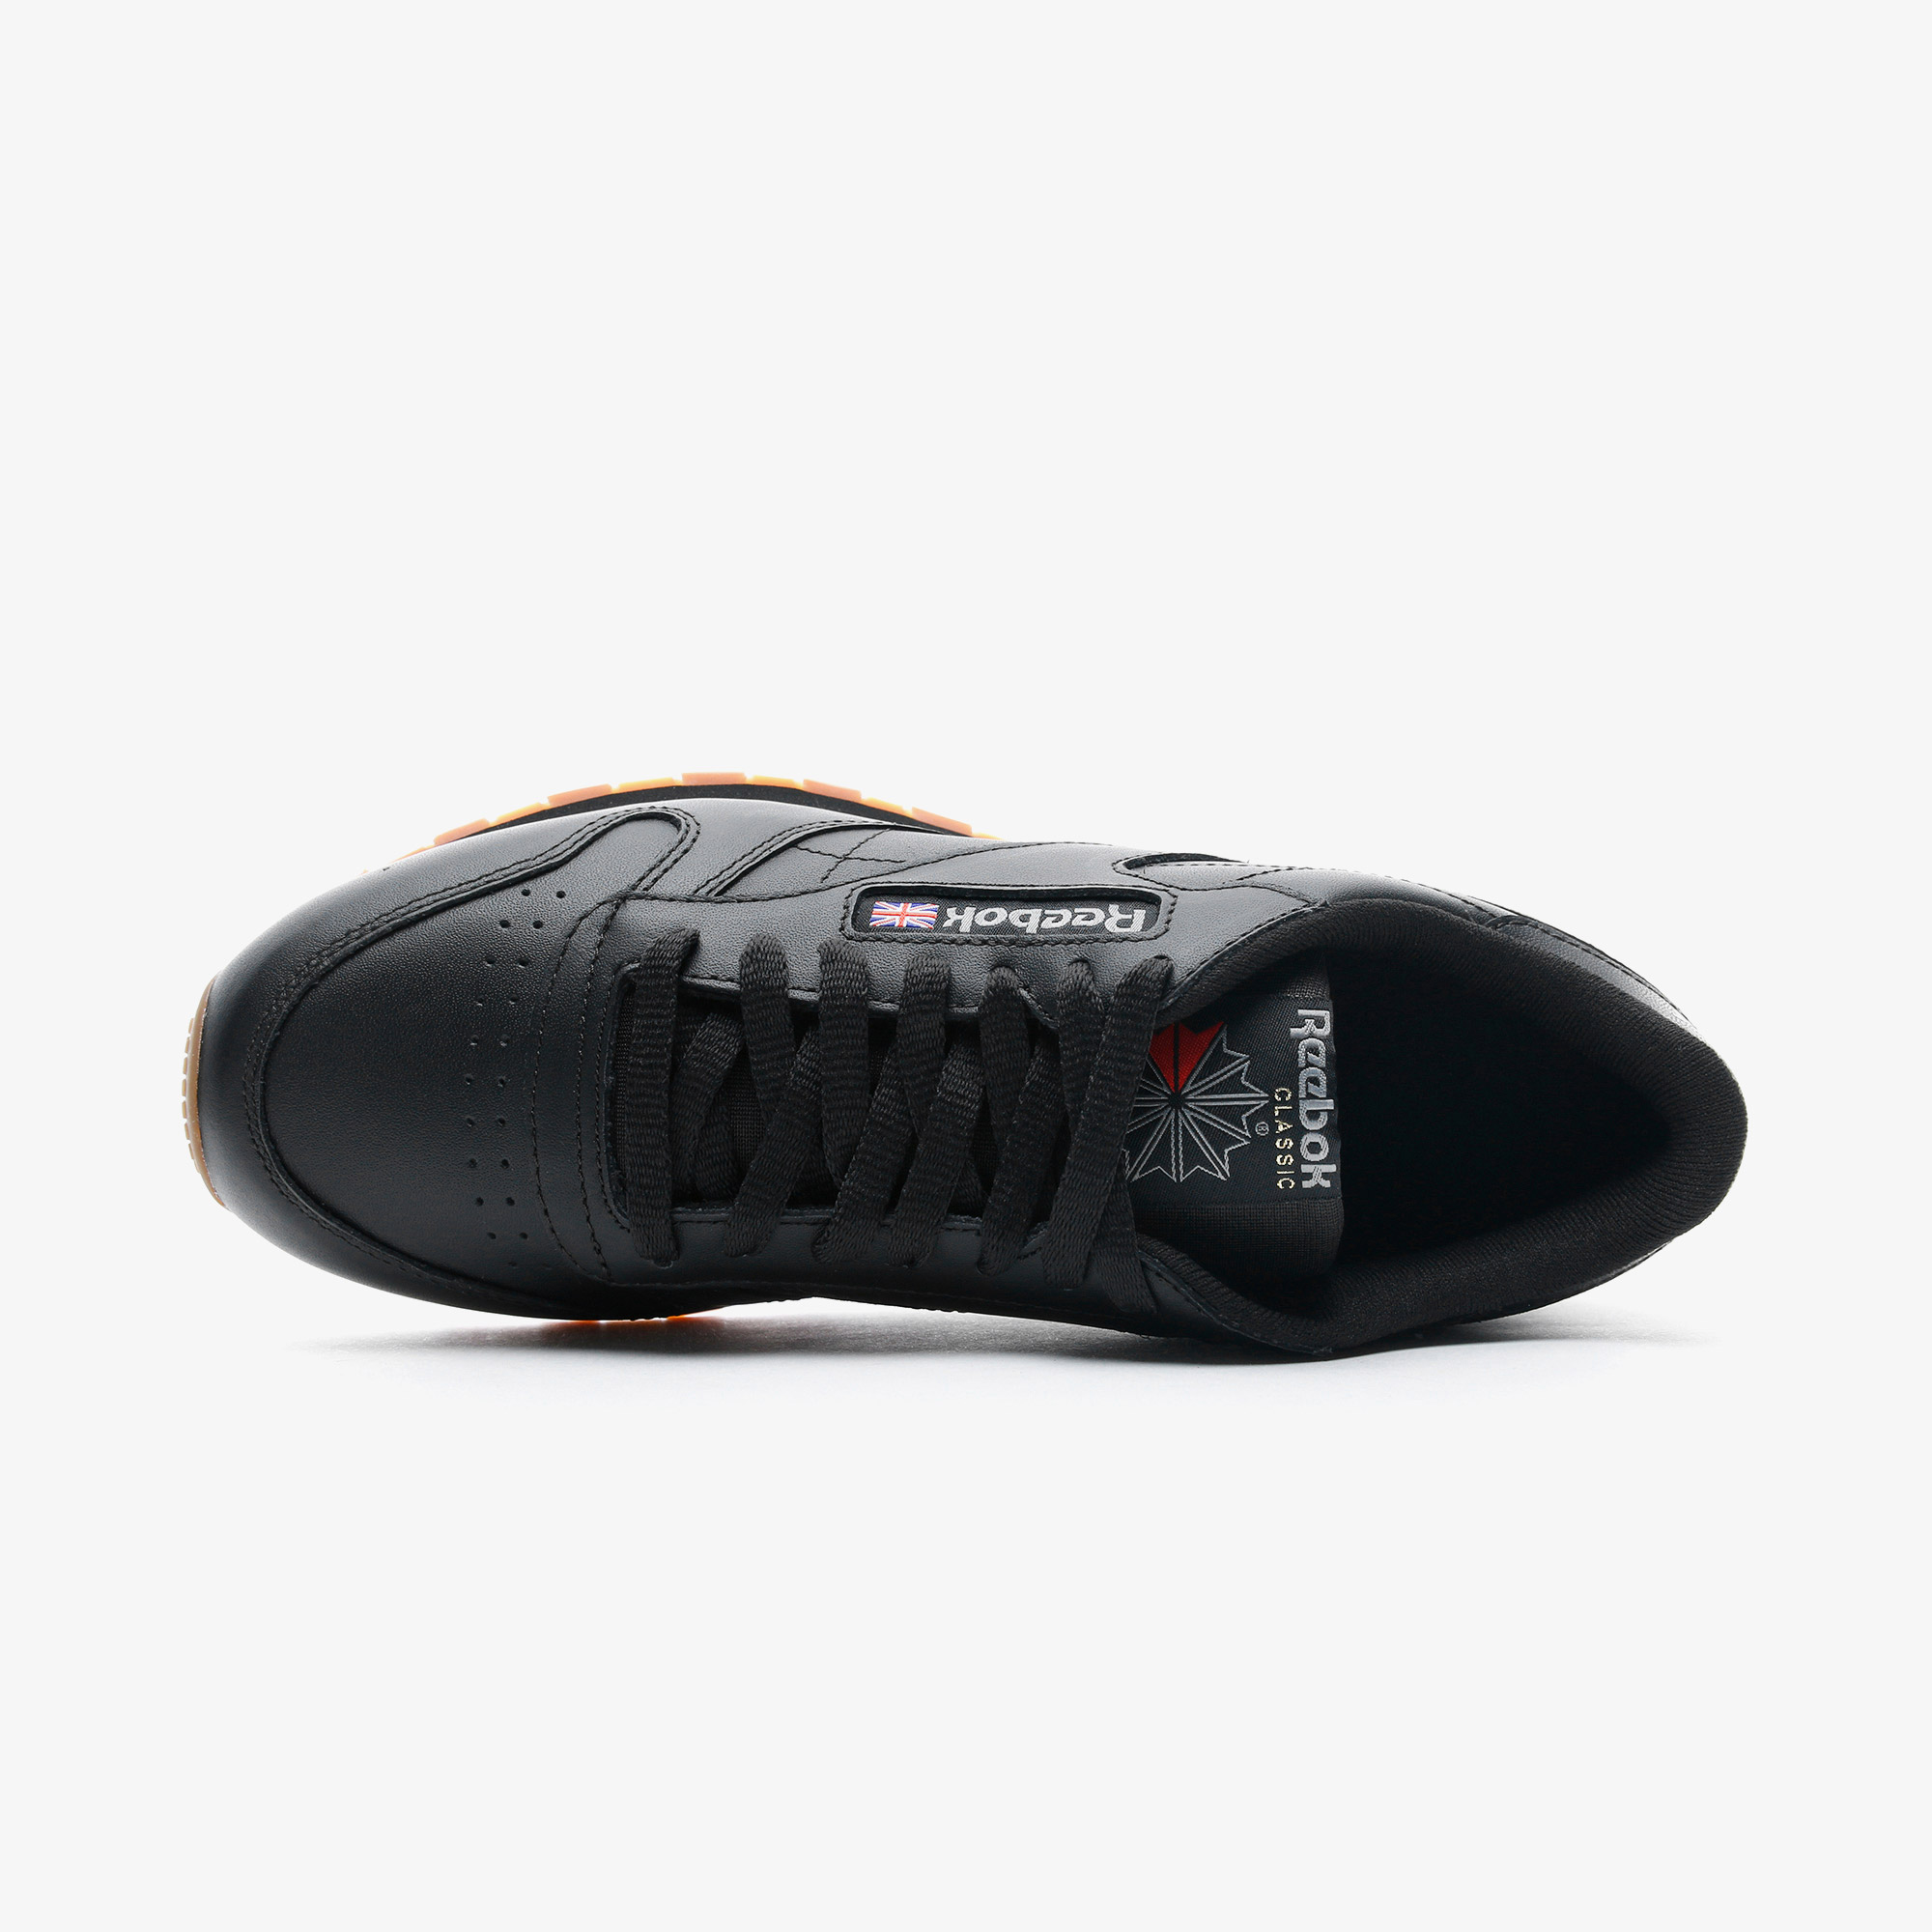 Reebok Classic Leather Erkek Siyah Spor Ayakkabı